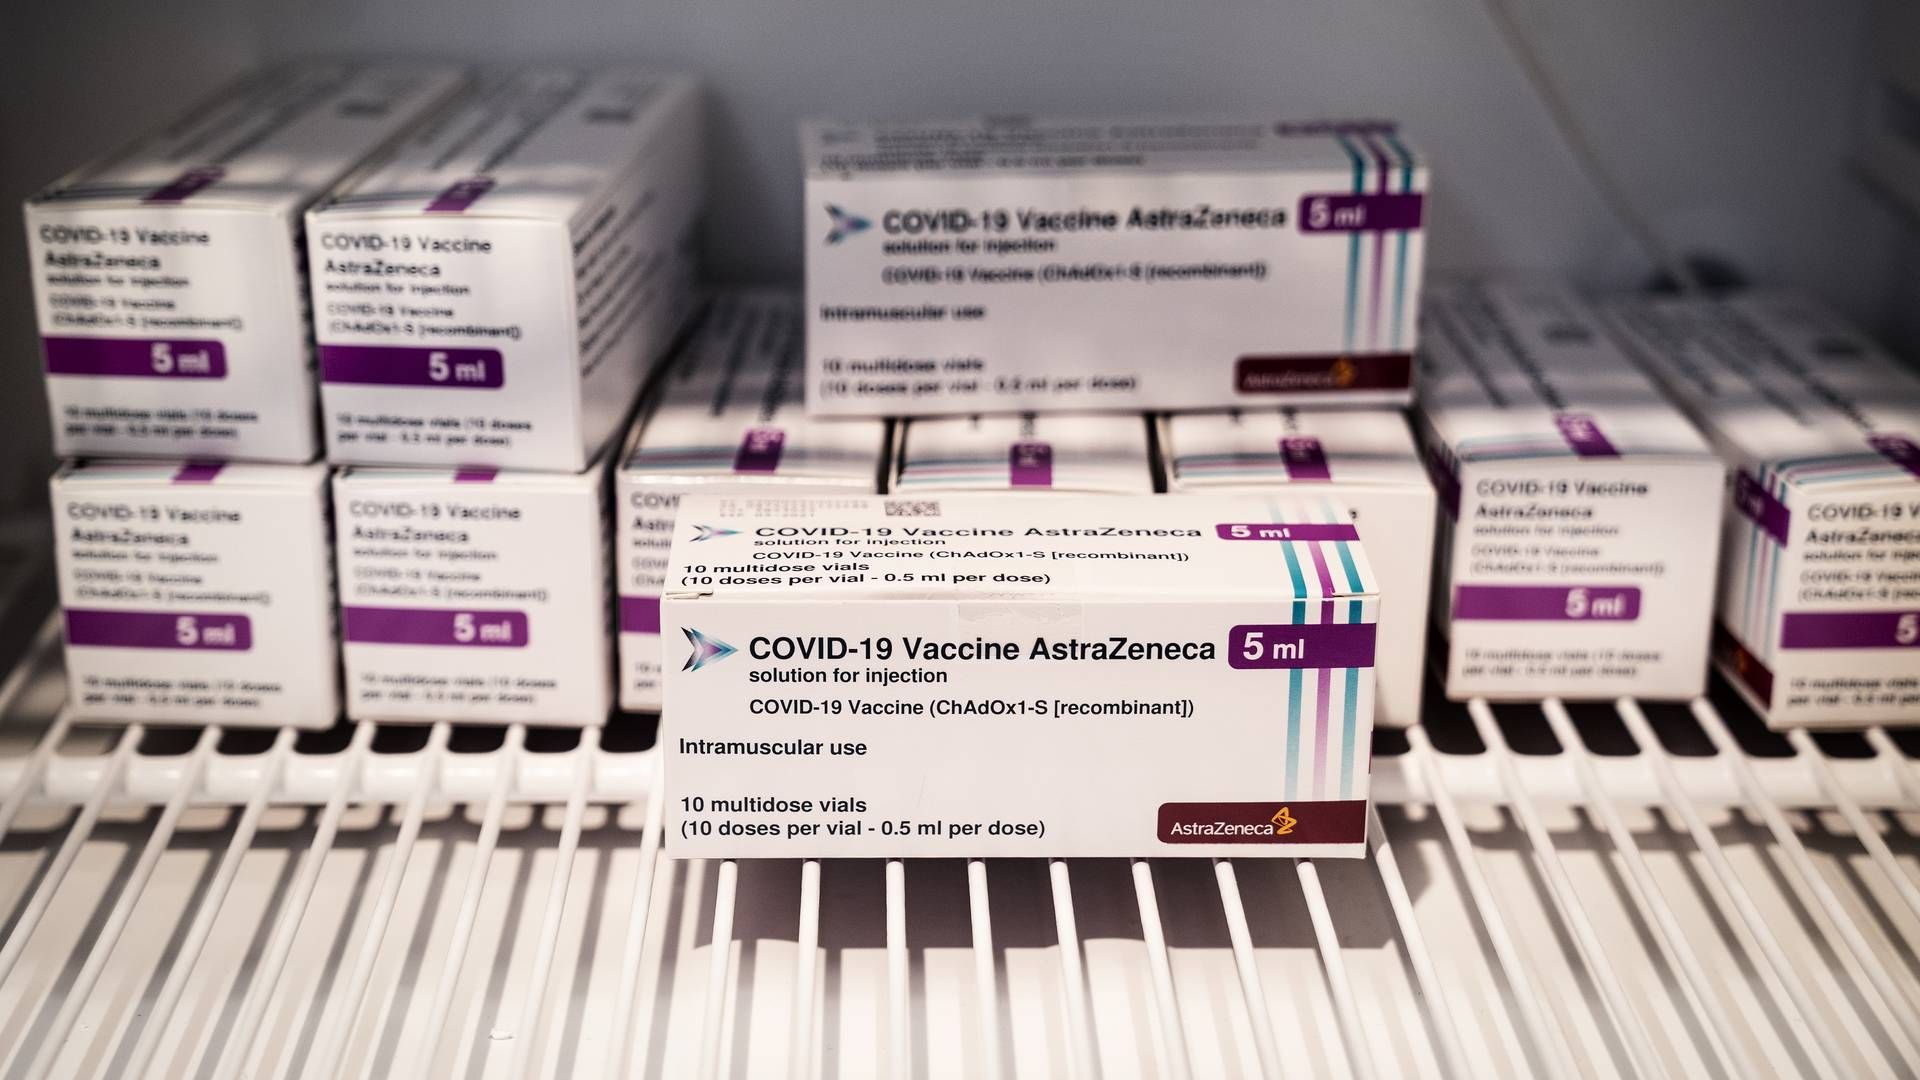 Det kommer til at blive dyrt for EU-landene, at vaccinationer fra AstraZeneca er sat på pause, vurderer Nordea. | Foto: LISELOTTE SABROE